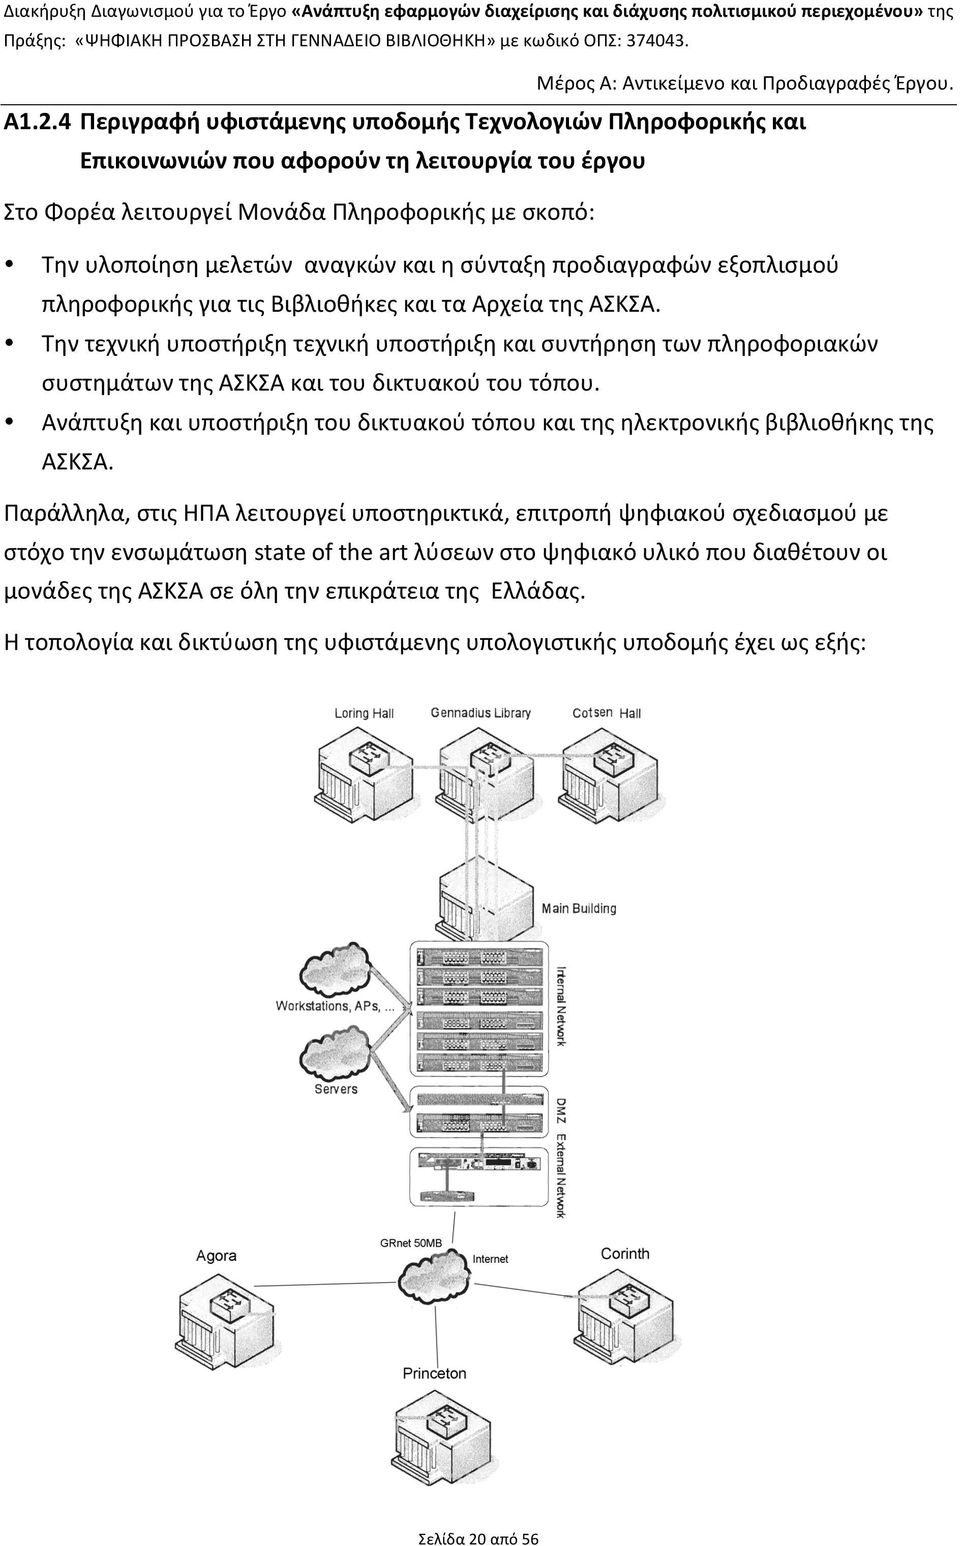 Την τεχνική υποστήριξη τεχνική υποστήριξη και συντήρηση των πληροφοριακών συστημάτων της ΑΣΚΣΑ και του δικτυακού του τόπου.